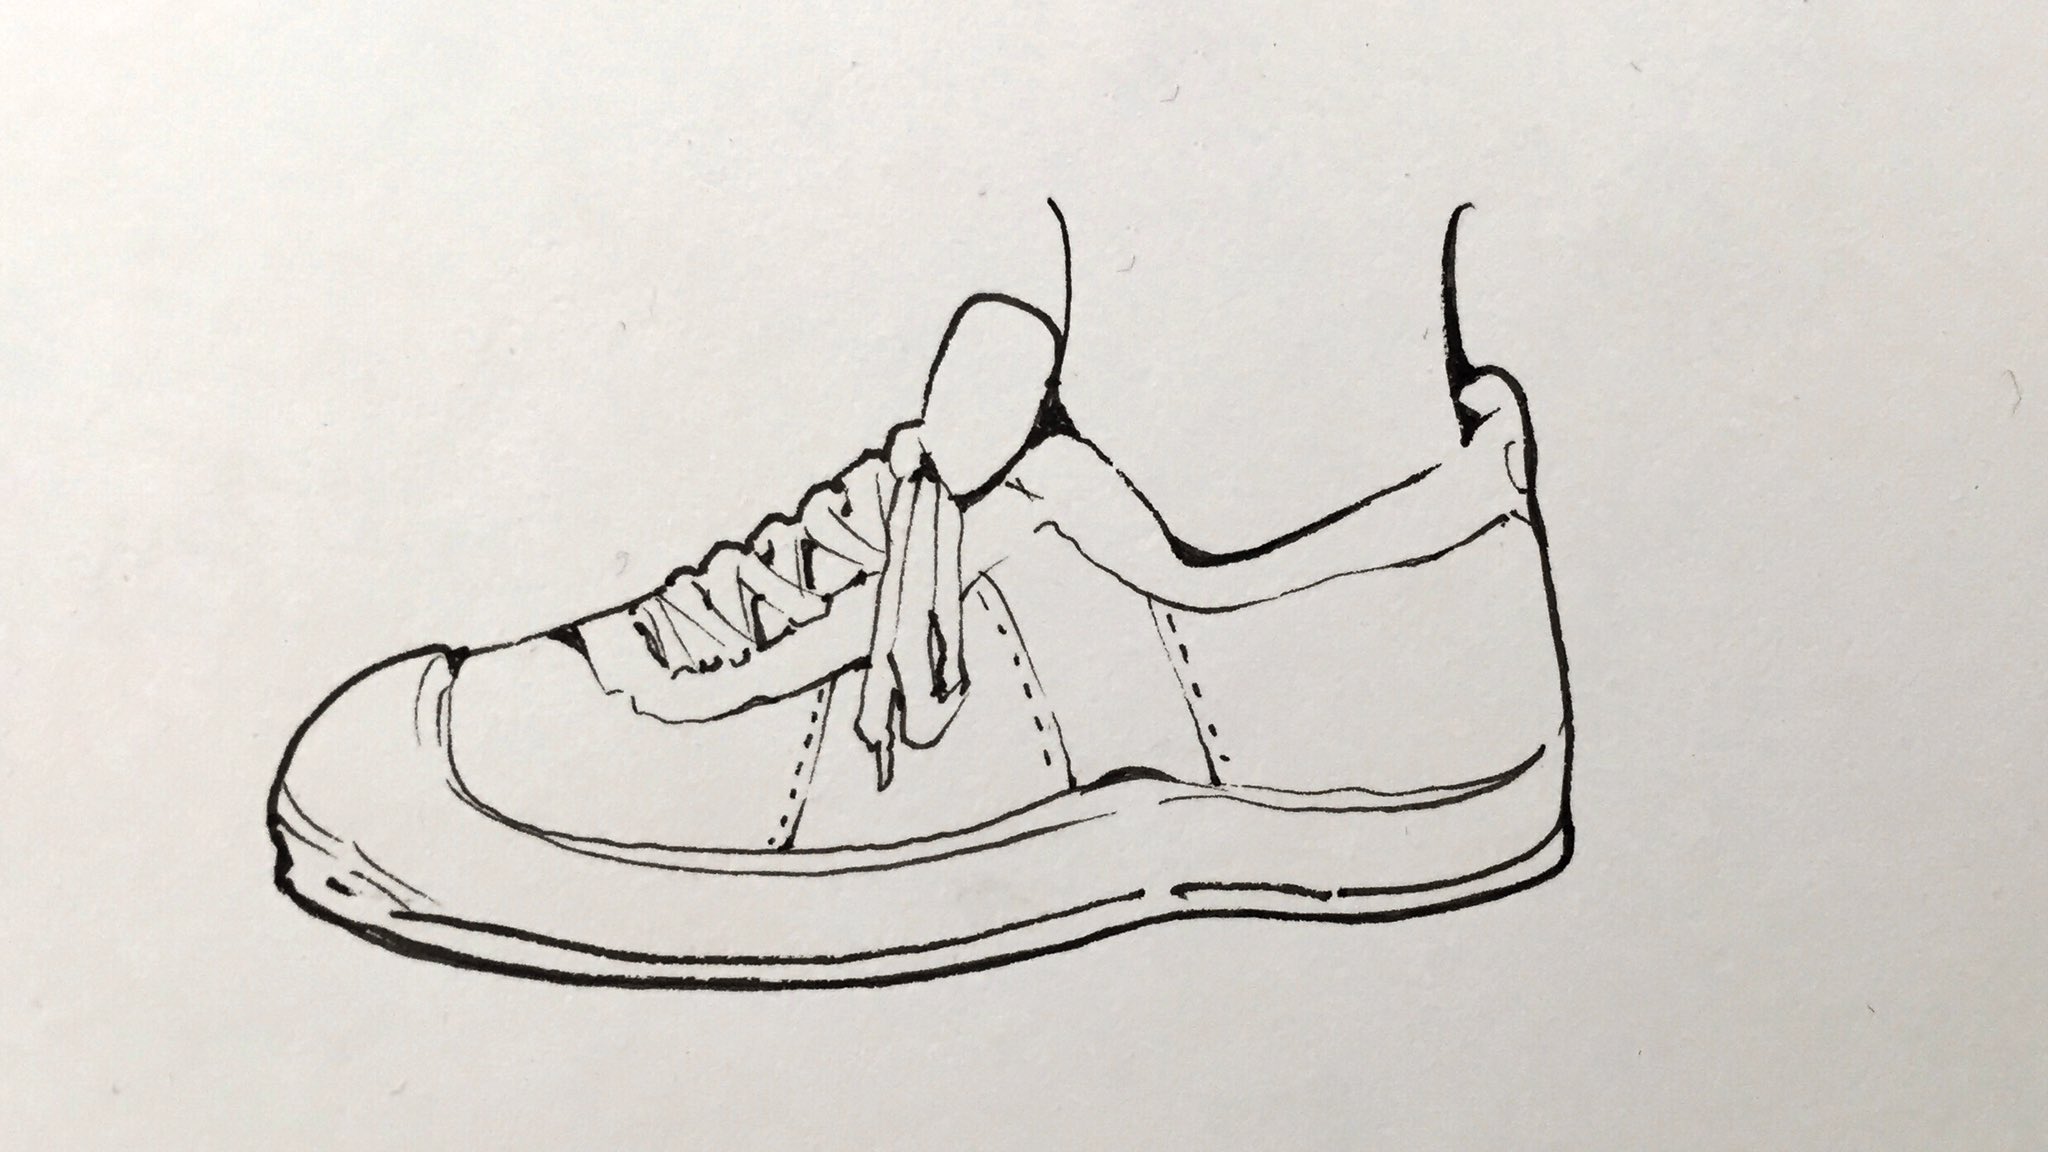 吉村拓也 イラスト講座 写真を見ずに パパッとそれらしく描きたい時の 靴シューズの描き方 参考になったらrtしていただけると 嬉しいです T Co S8tmw6bksd Twitter